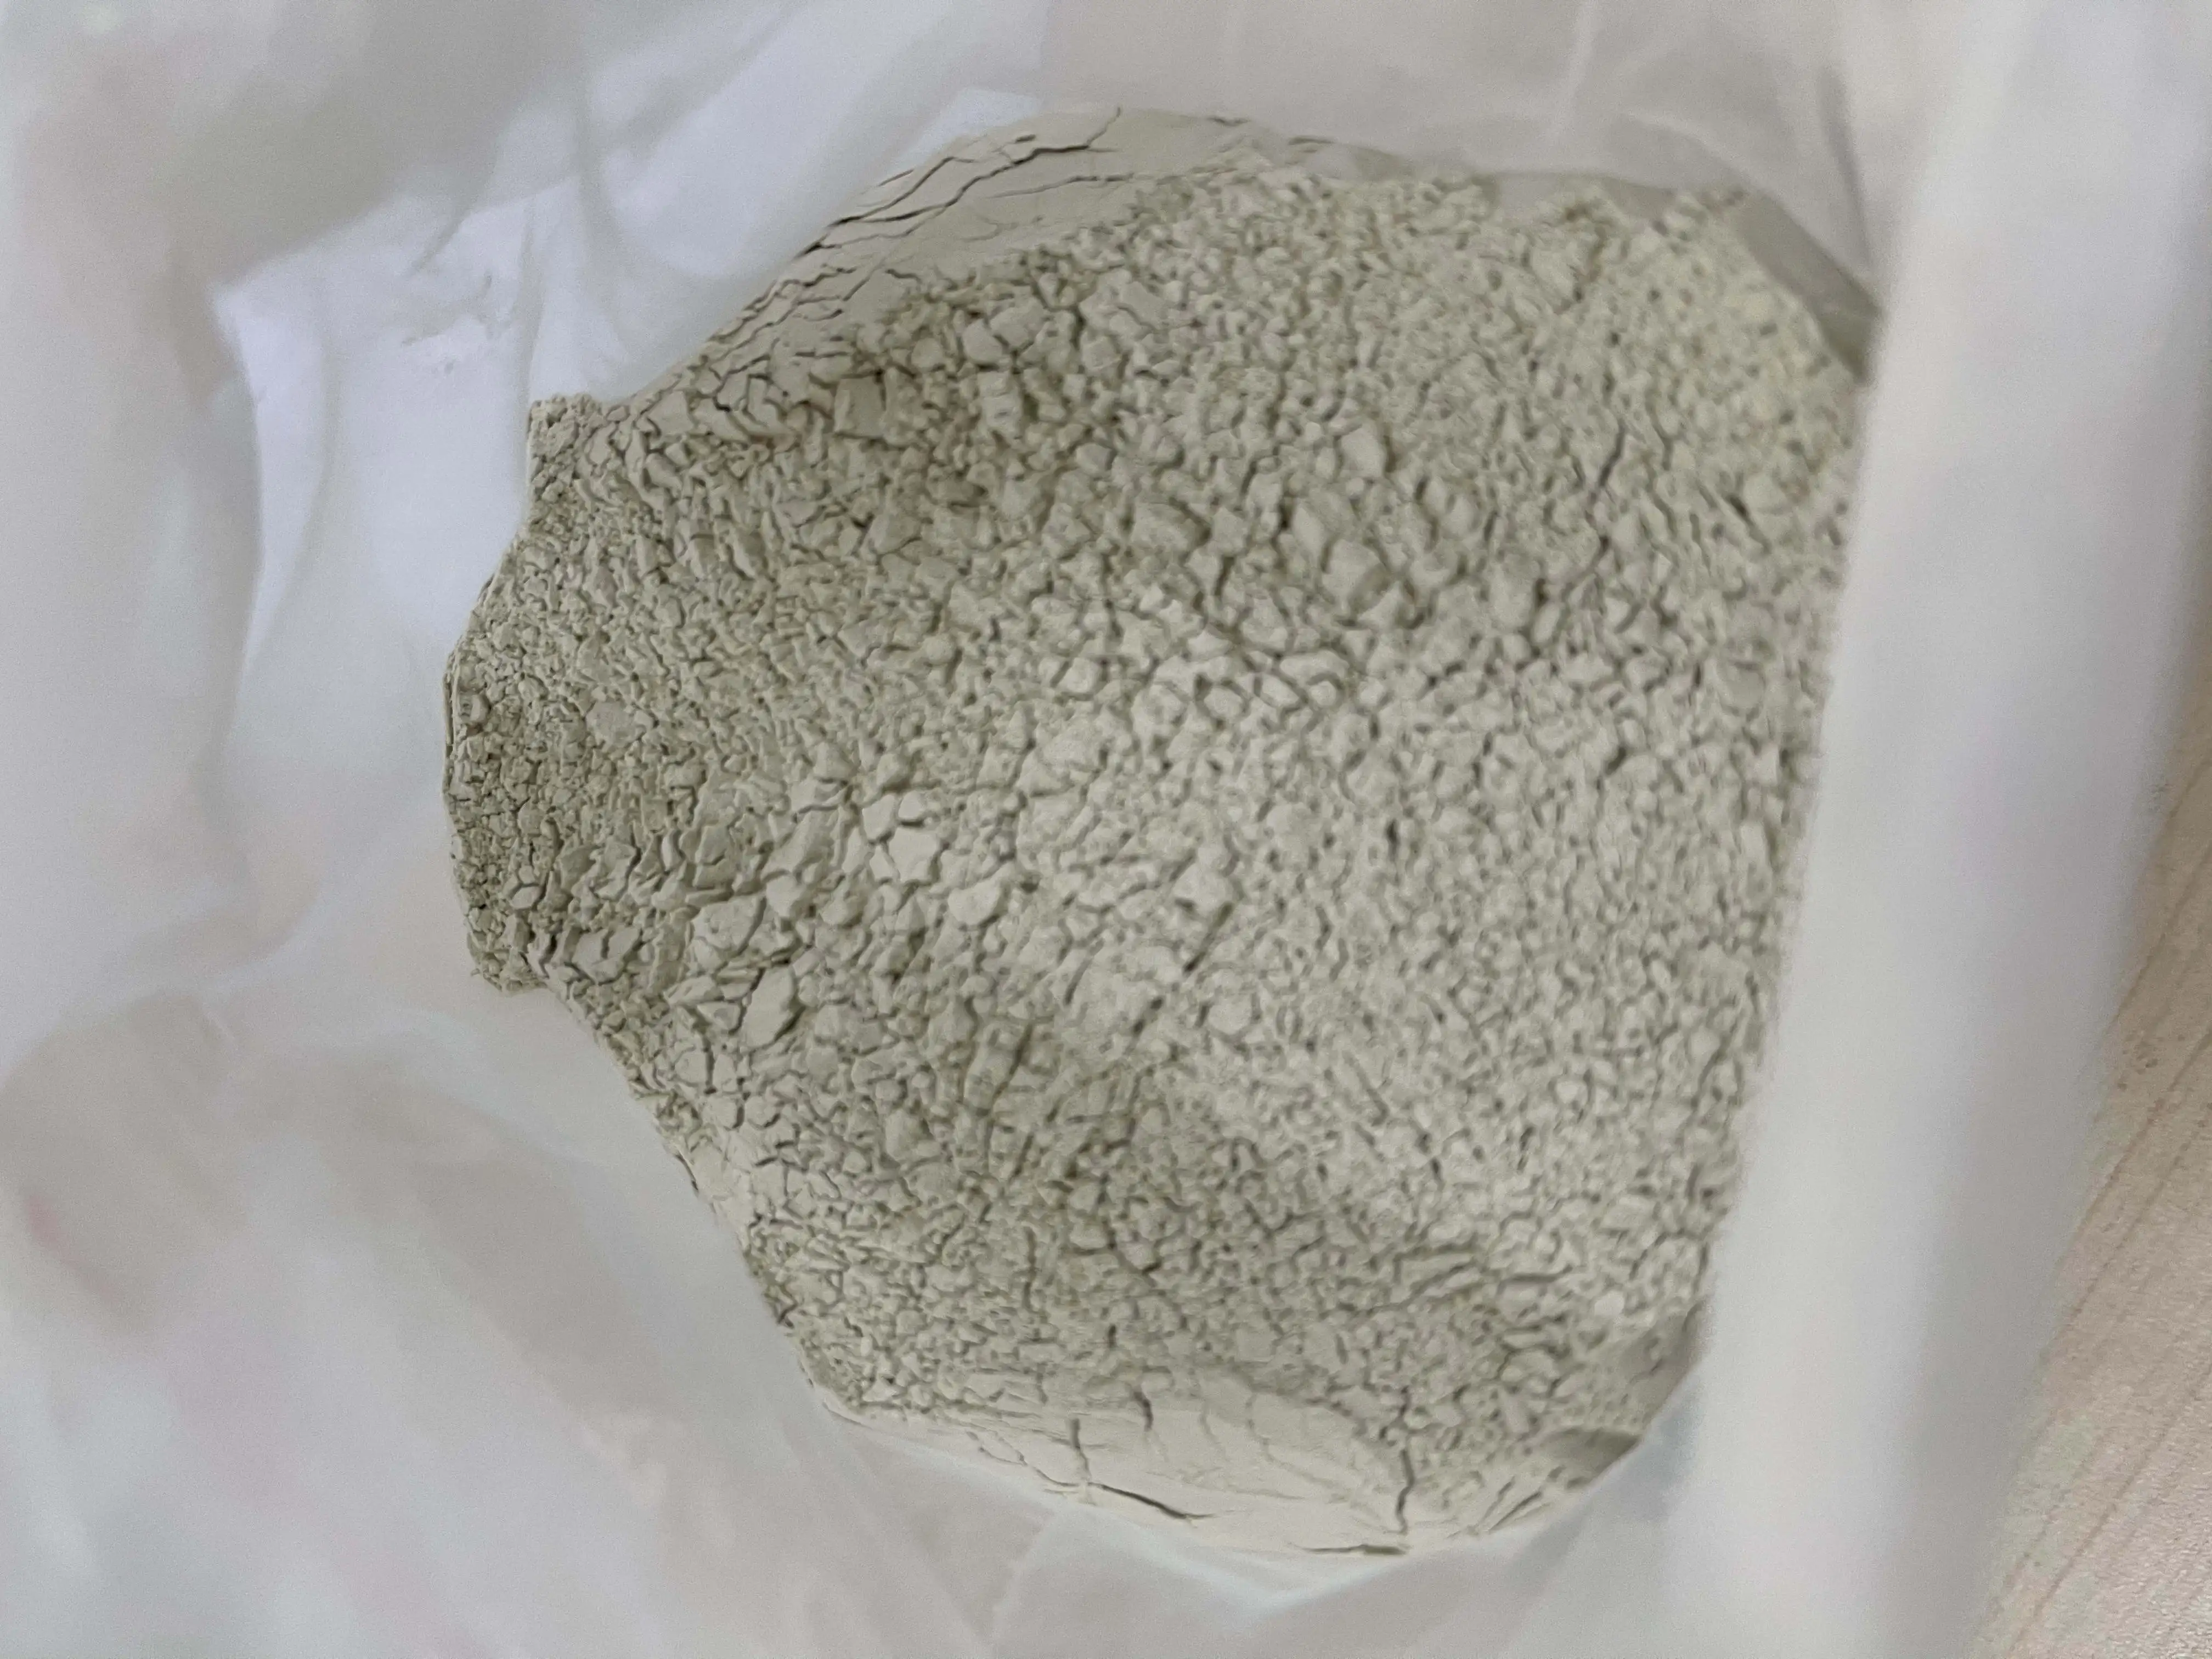 Wholesale edible certified active bleaching earth bentonite montmorillonite clay